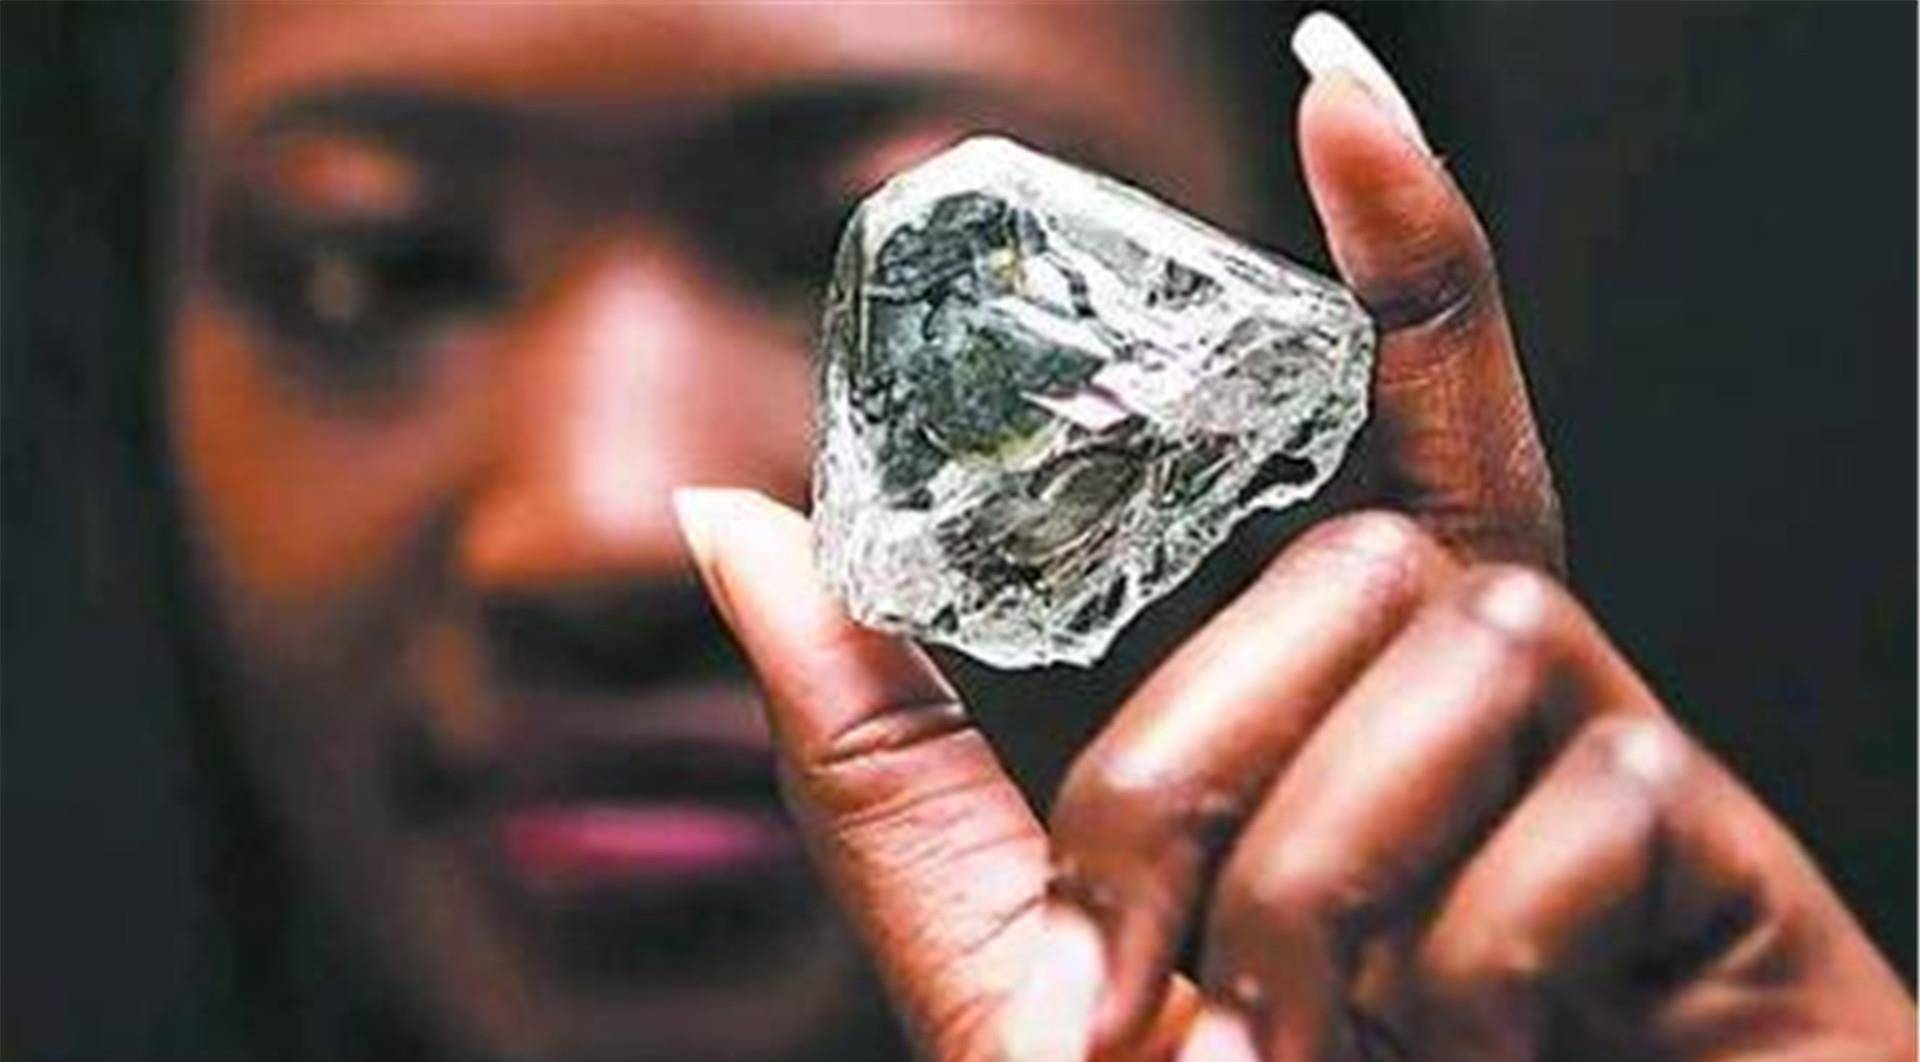   引起 非洲人想知道:为什么我们的钻石这么大、这么便宜，外国游客却不买？ 